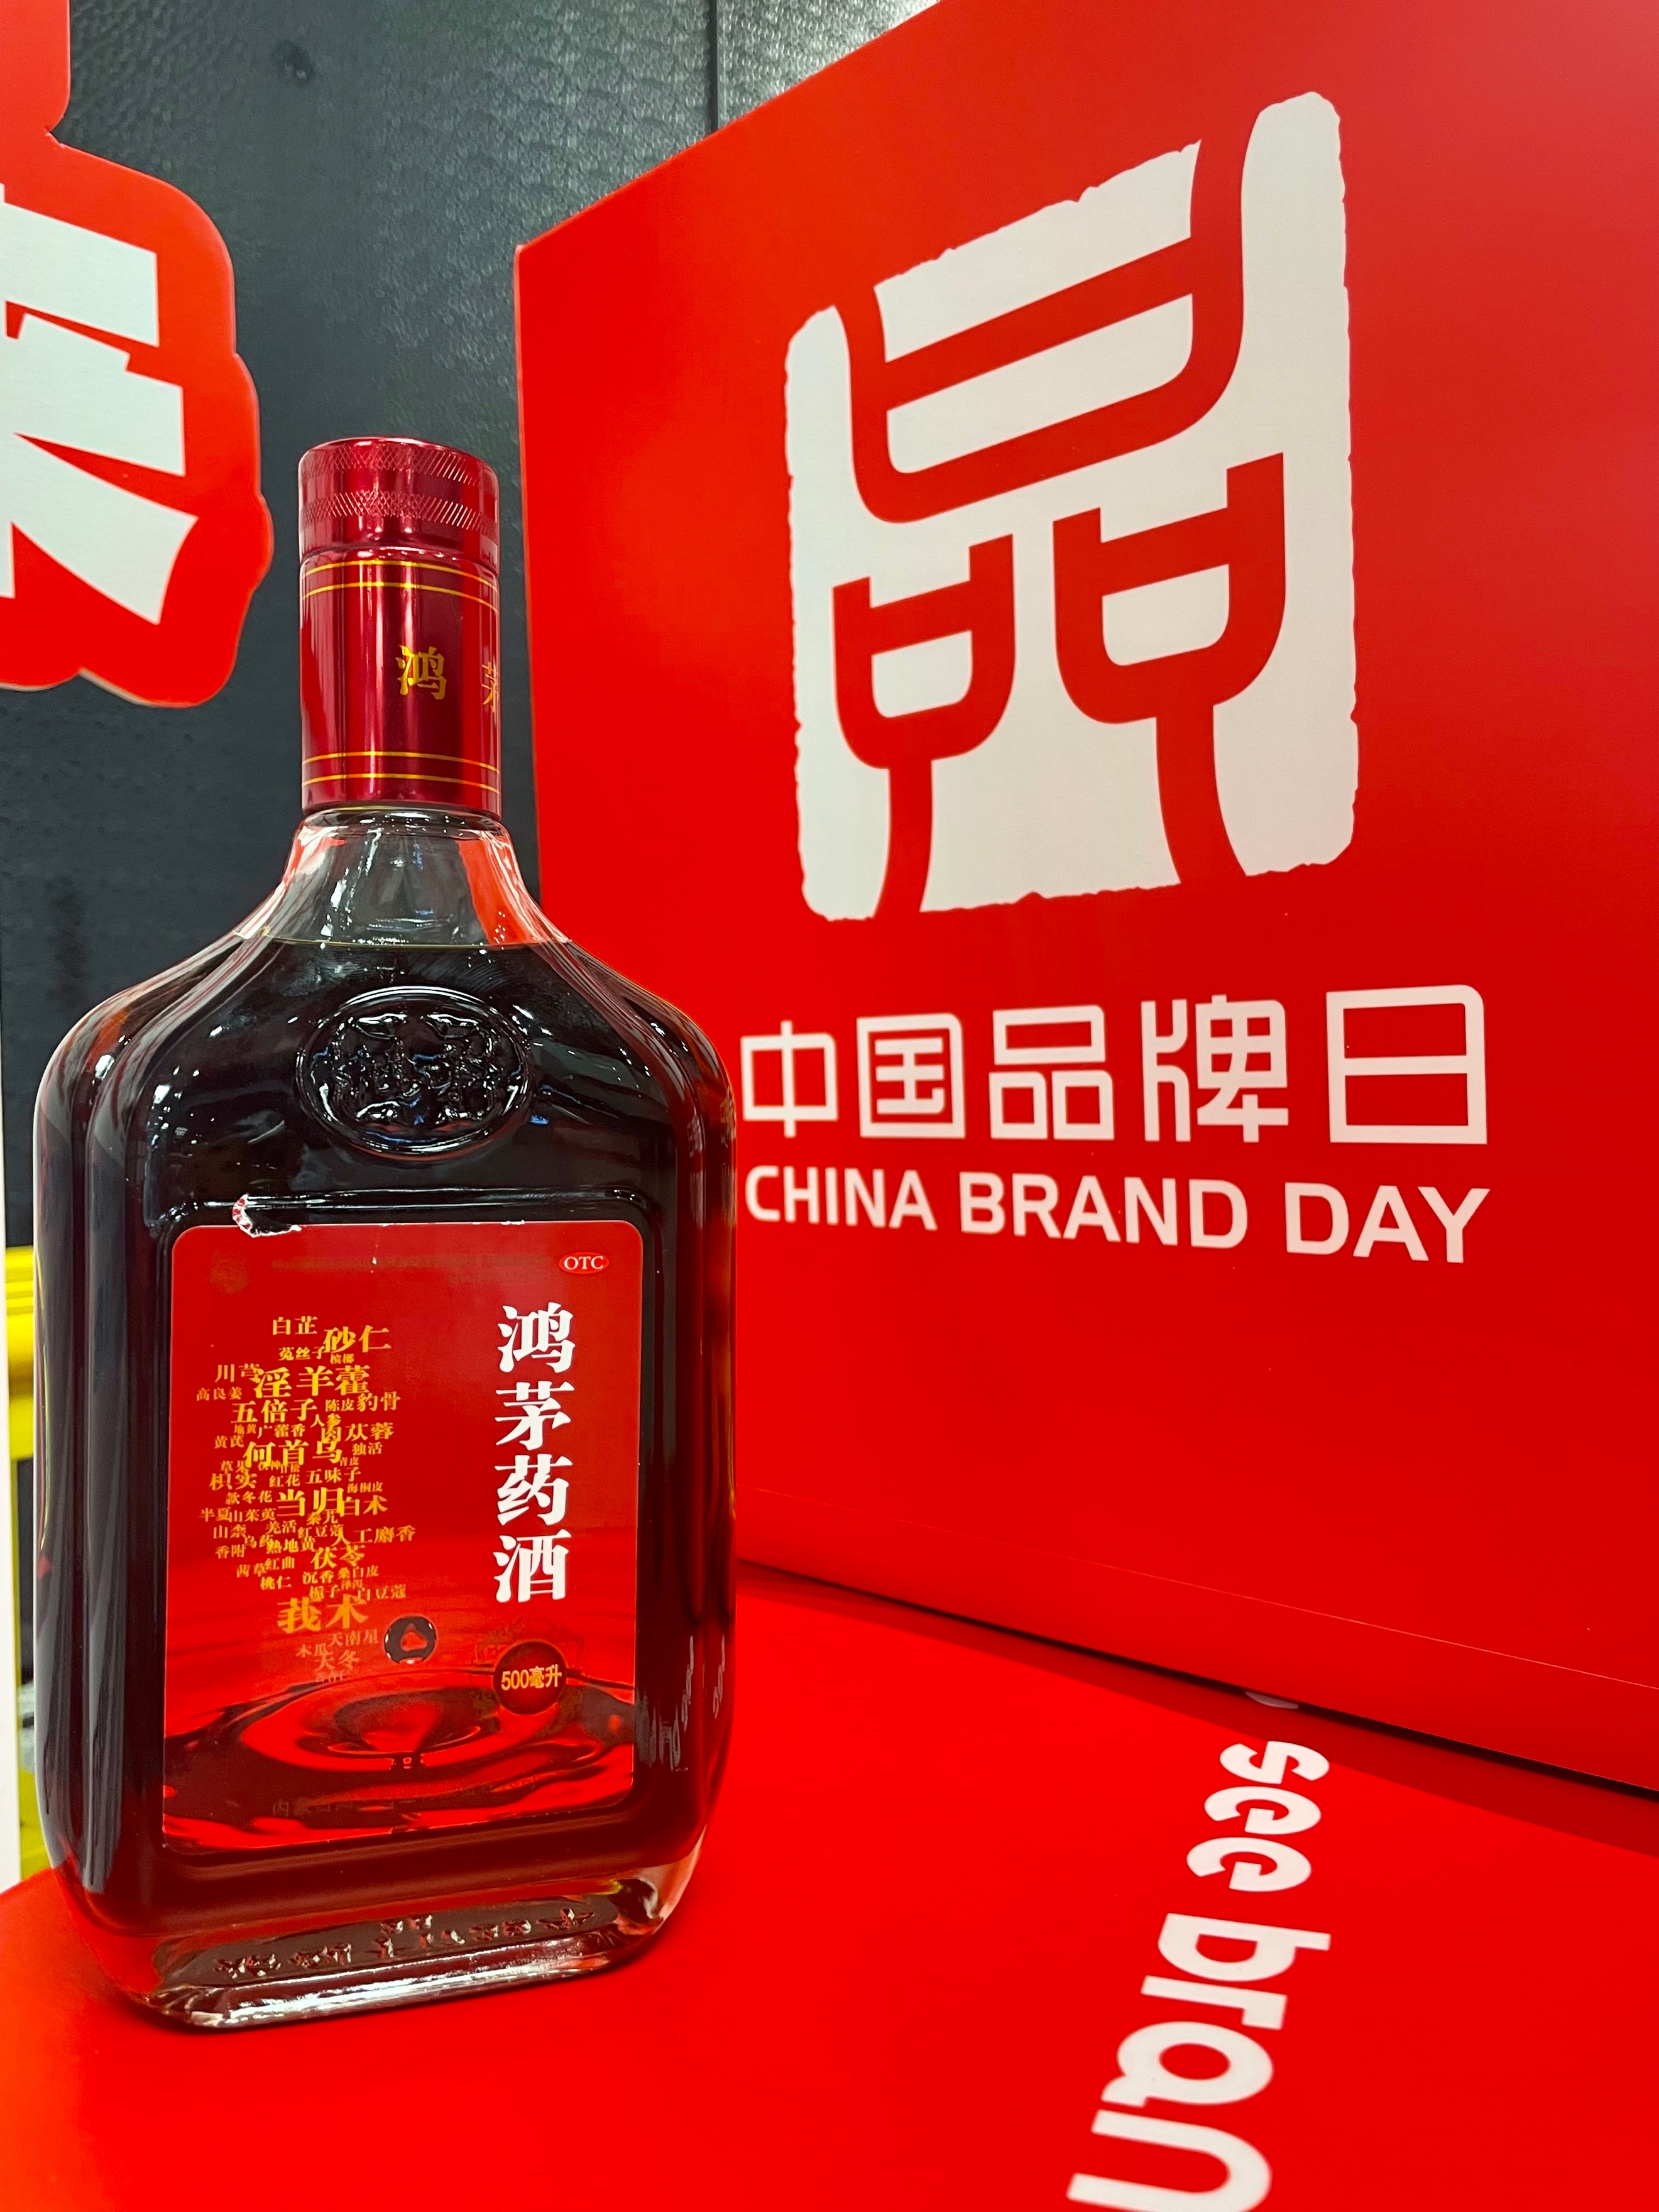 第八届中国品牌日系列活动开幕,鸿茅药酒亮相品牌美好市集